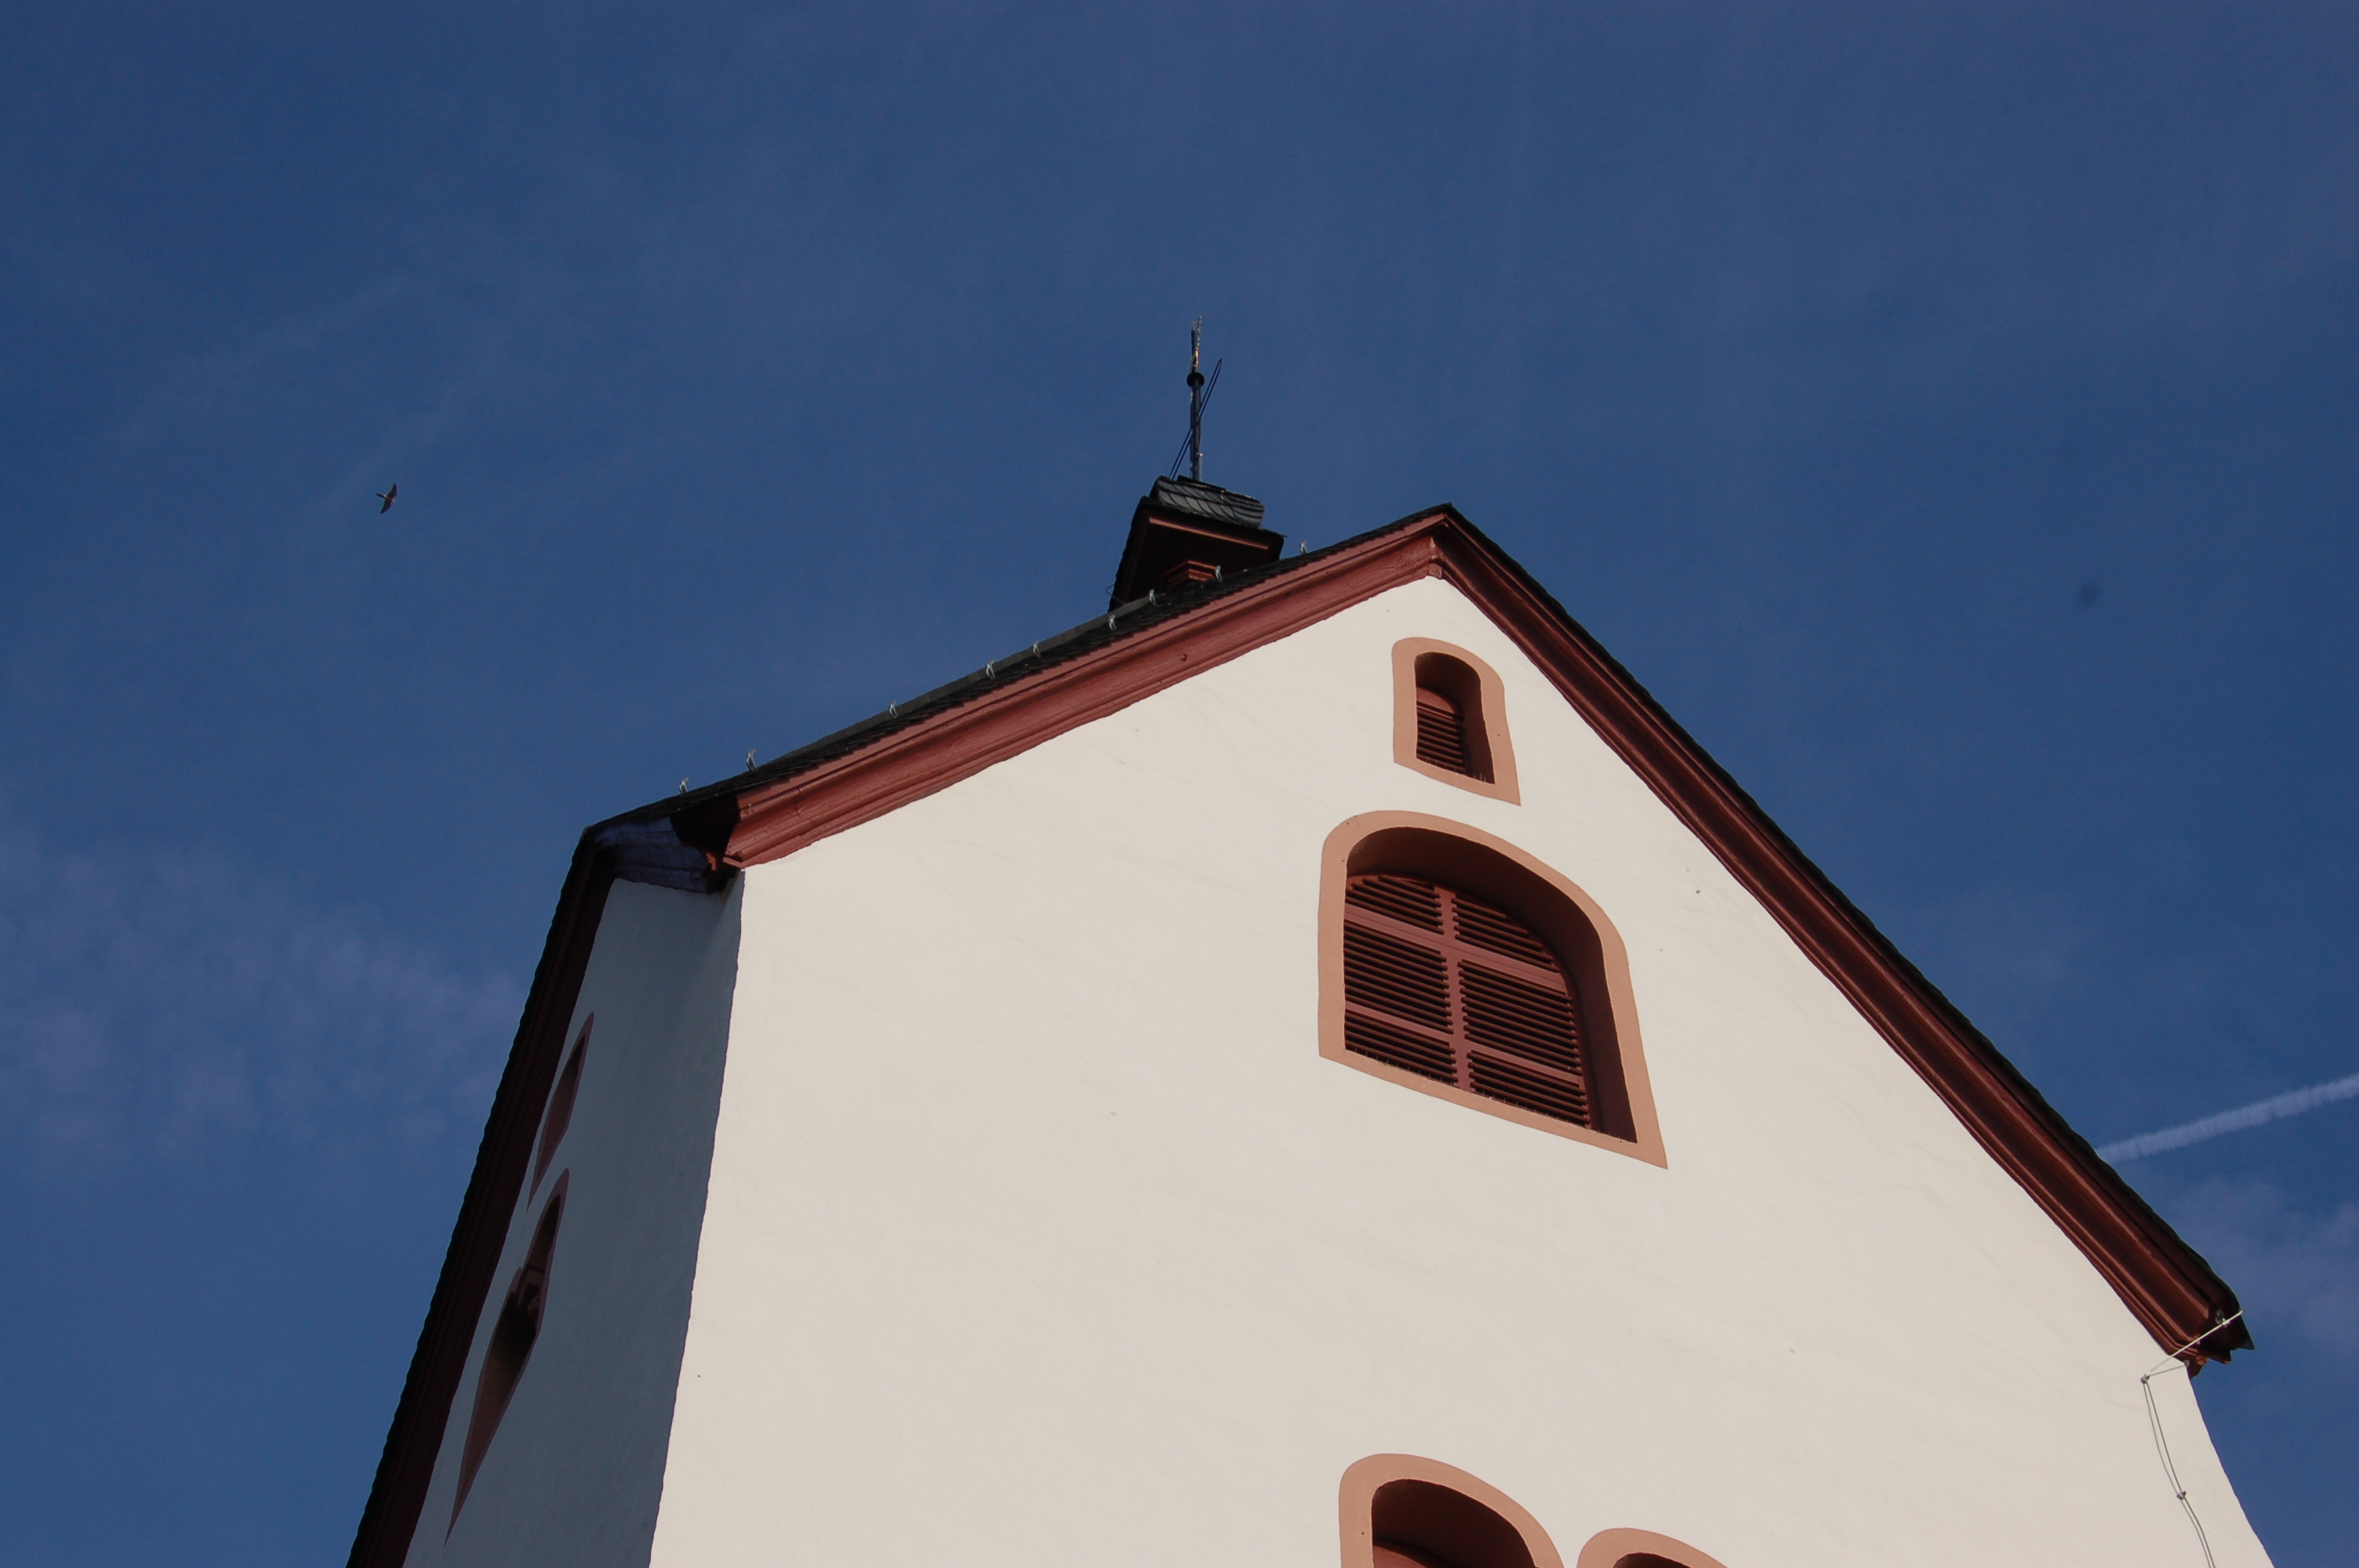 Bild 1 Martinskirche Bärstadt - Evangelische Kirchengemeinde Bärstadt in Schlangenbad